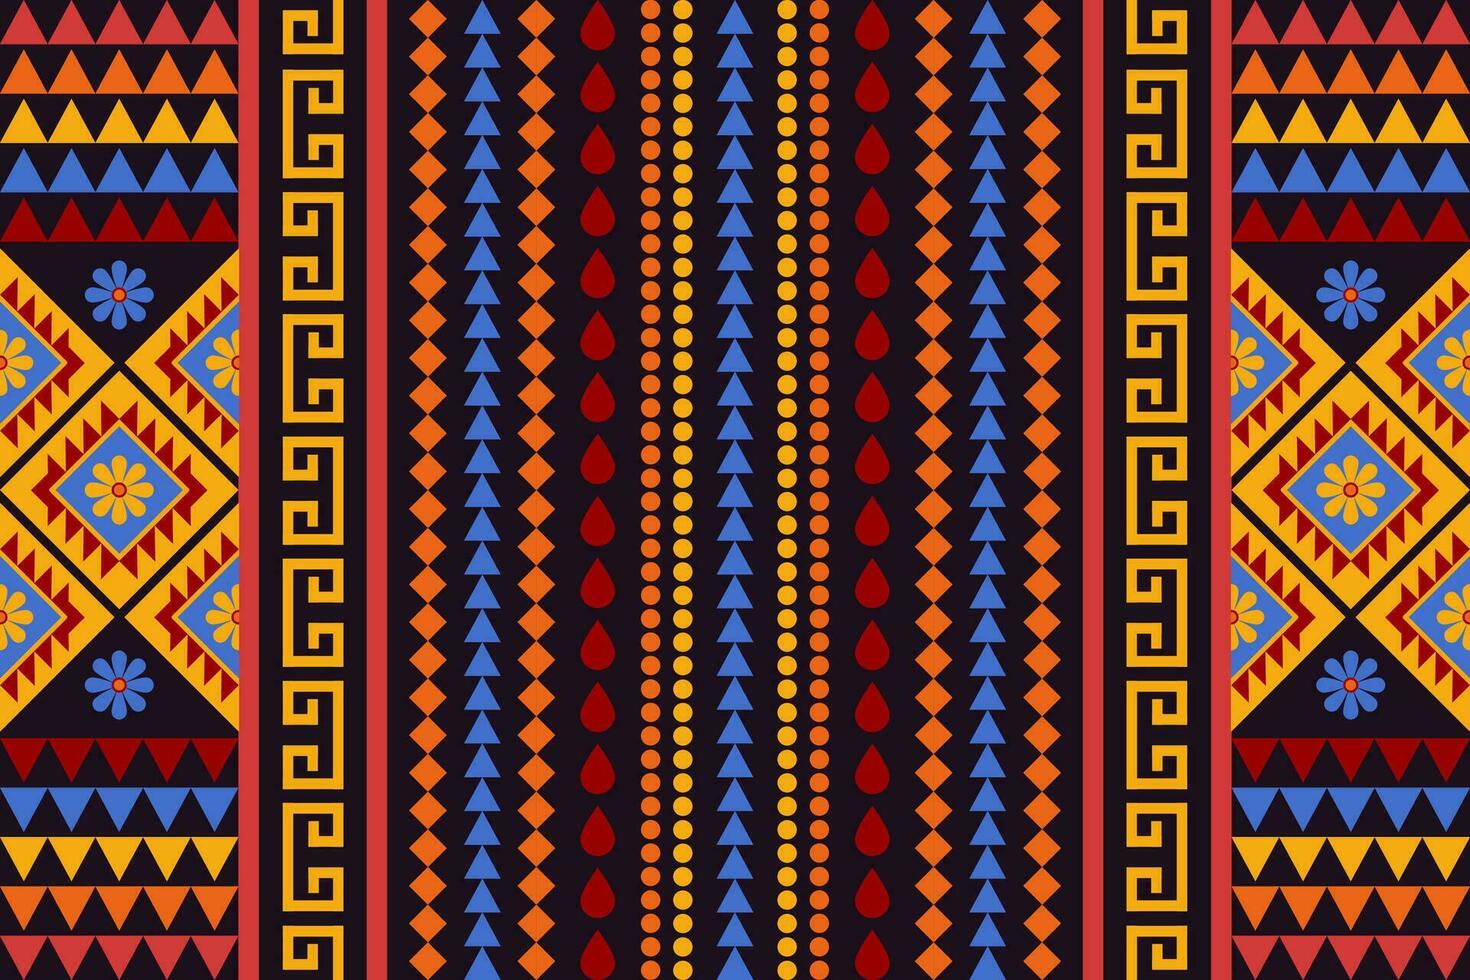 meetkundig etnisch patroon traditioneel ontwerp voor achtergrond, tapijt, behang, kleding, inpakken, batik, kleding stof, vector illustratie borduurwerk stijl. tribal patroon